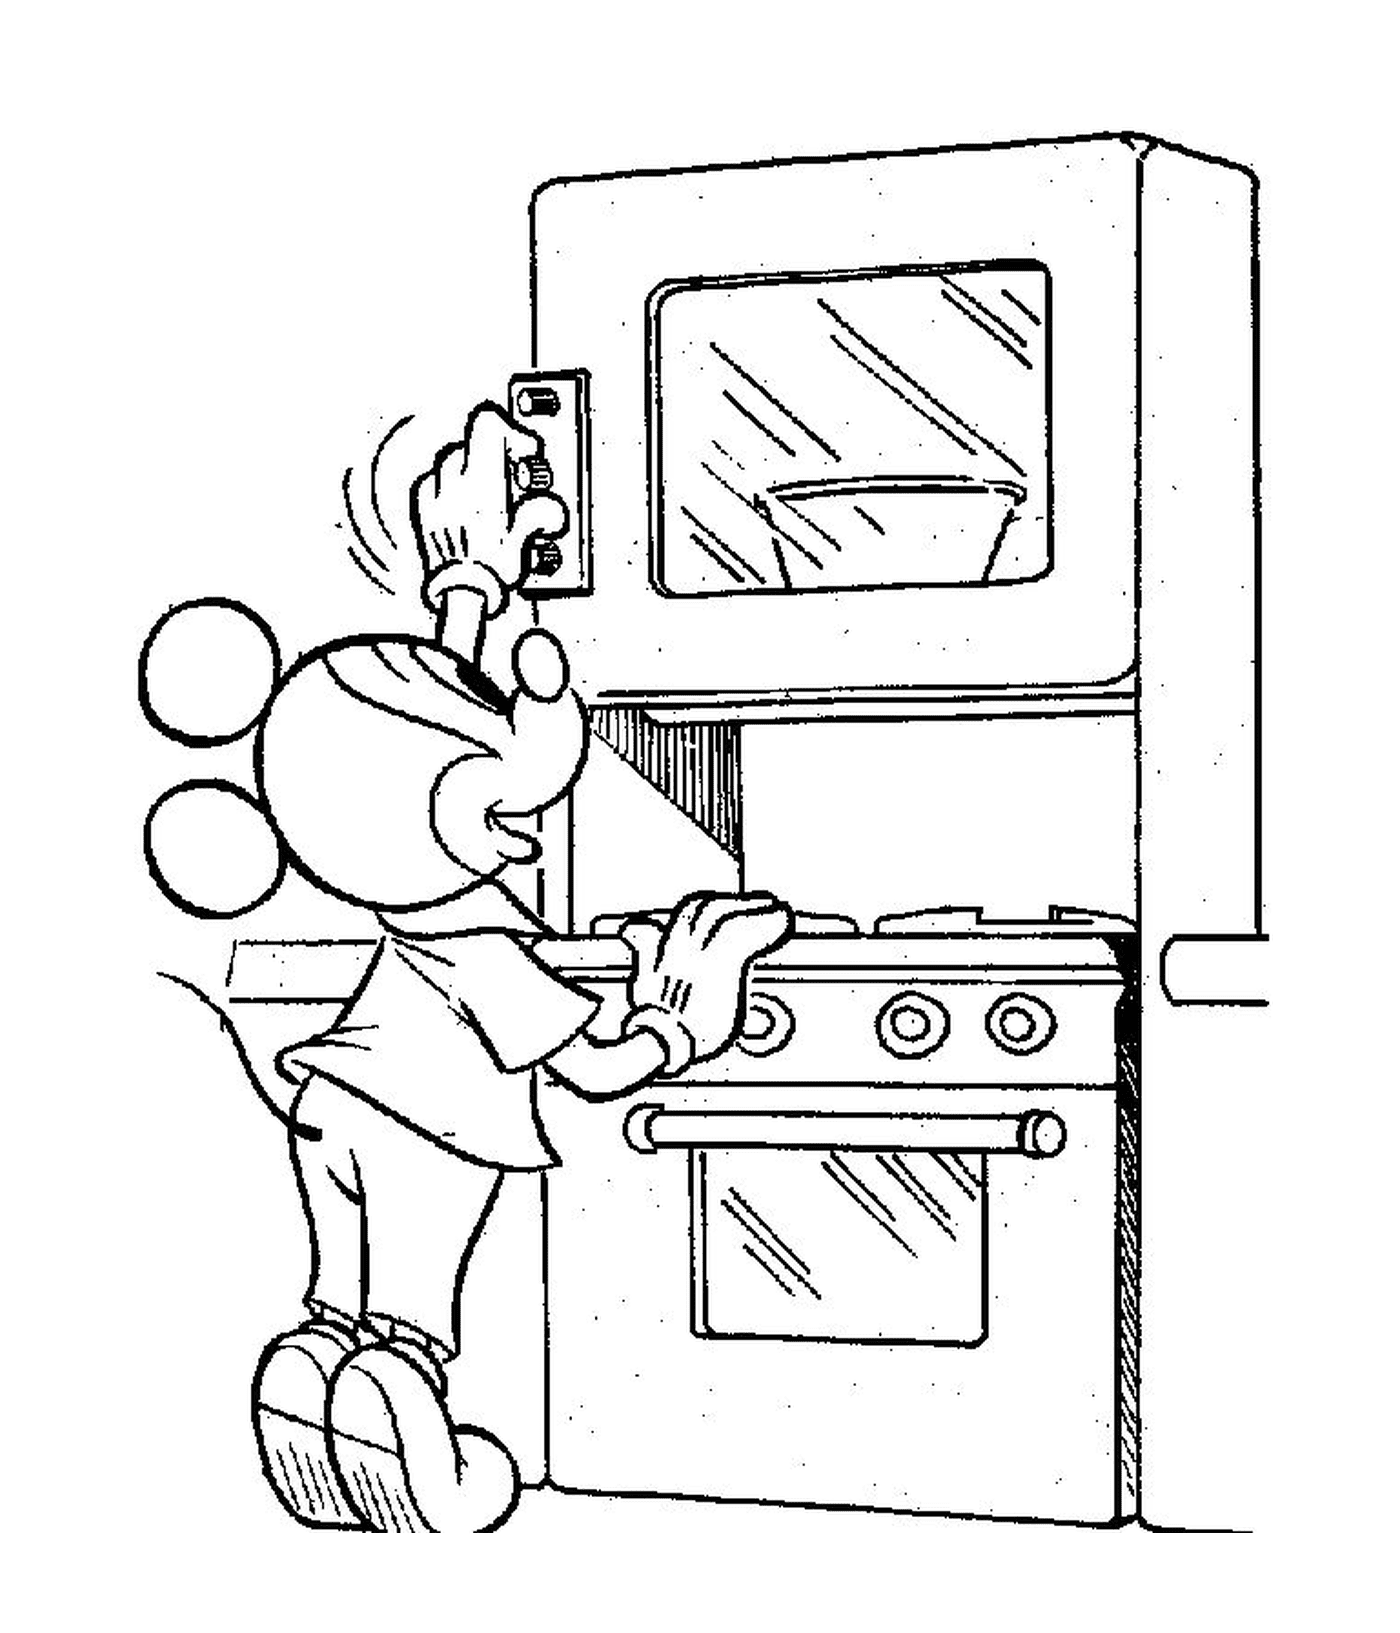   Une personne dessinée cuisine dans une cuisine 